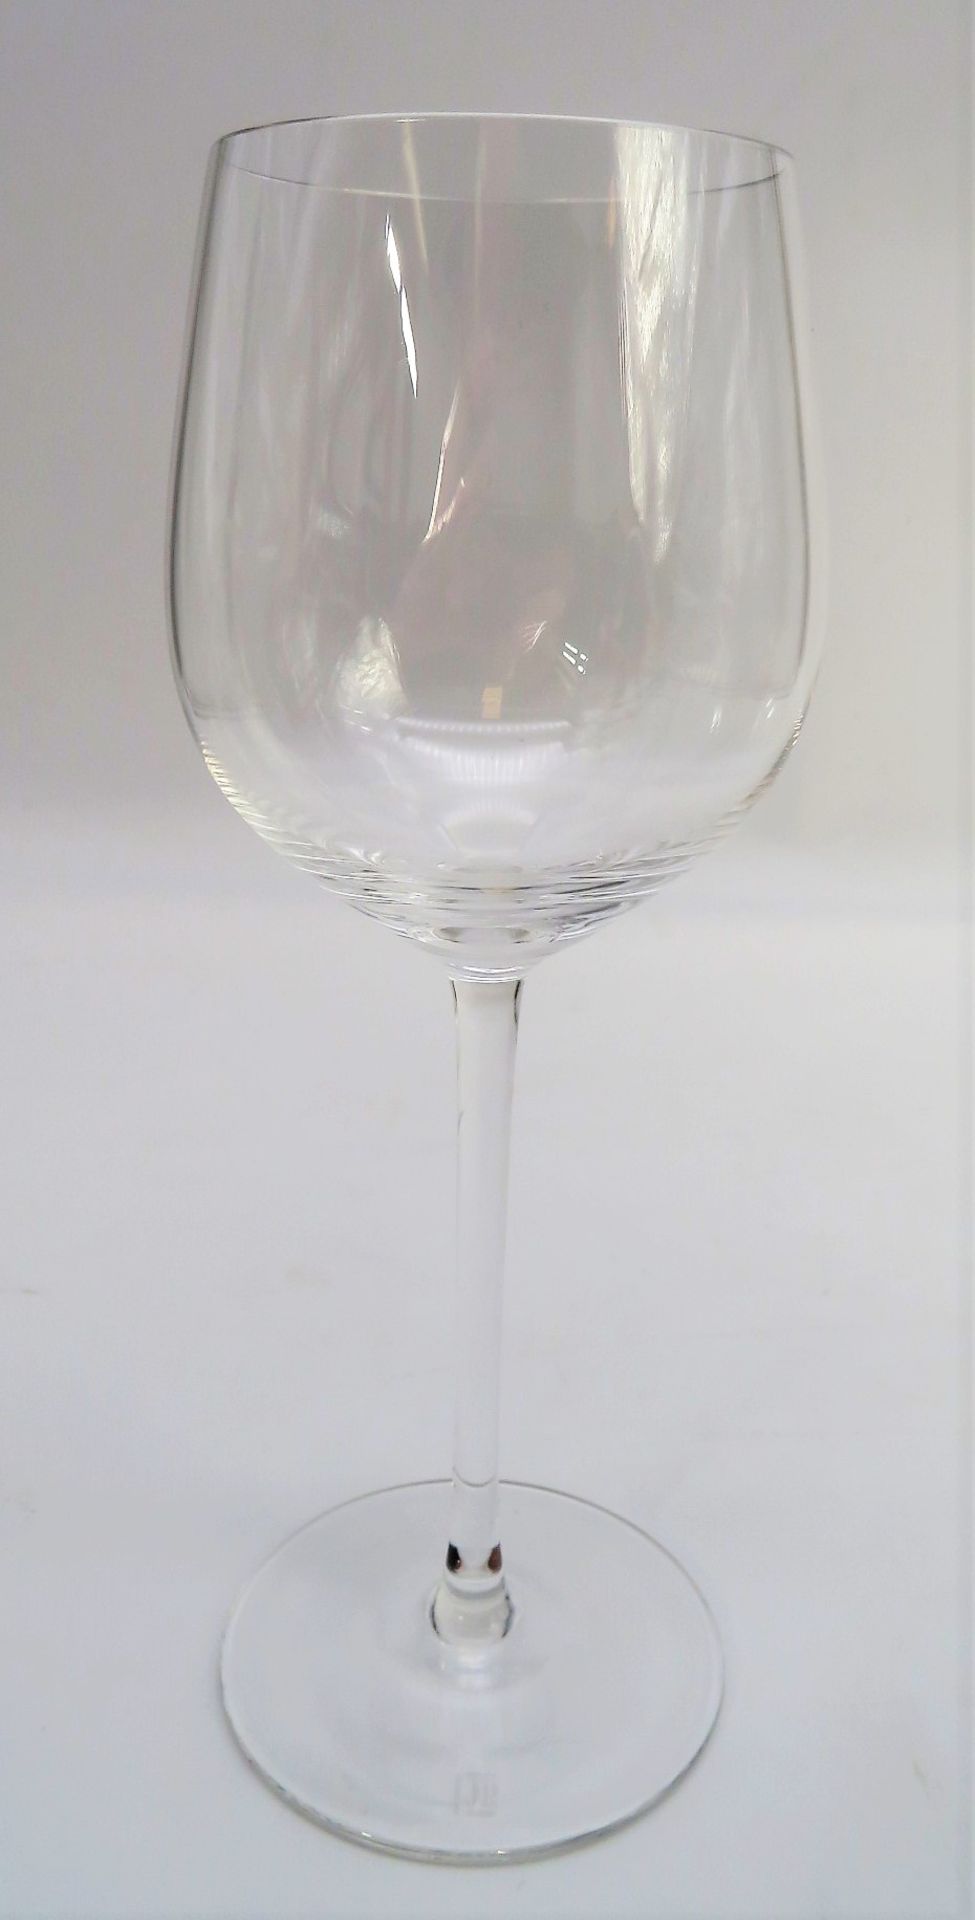 10 Weißweingläser, Riedel, farbloses Glas, gem., h 19,4 cm.